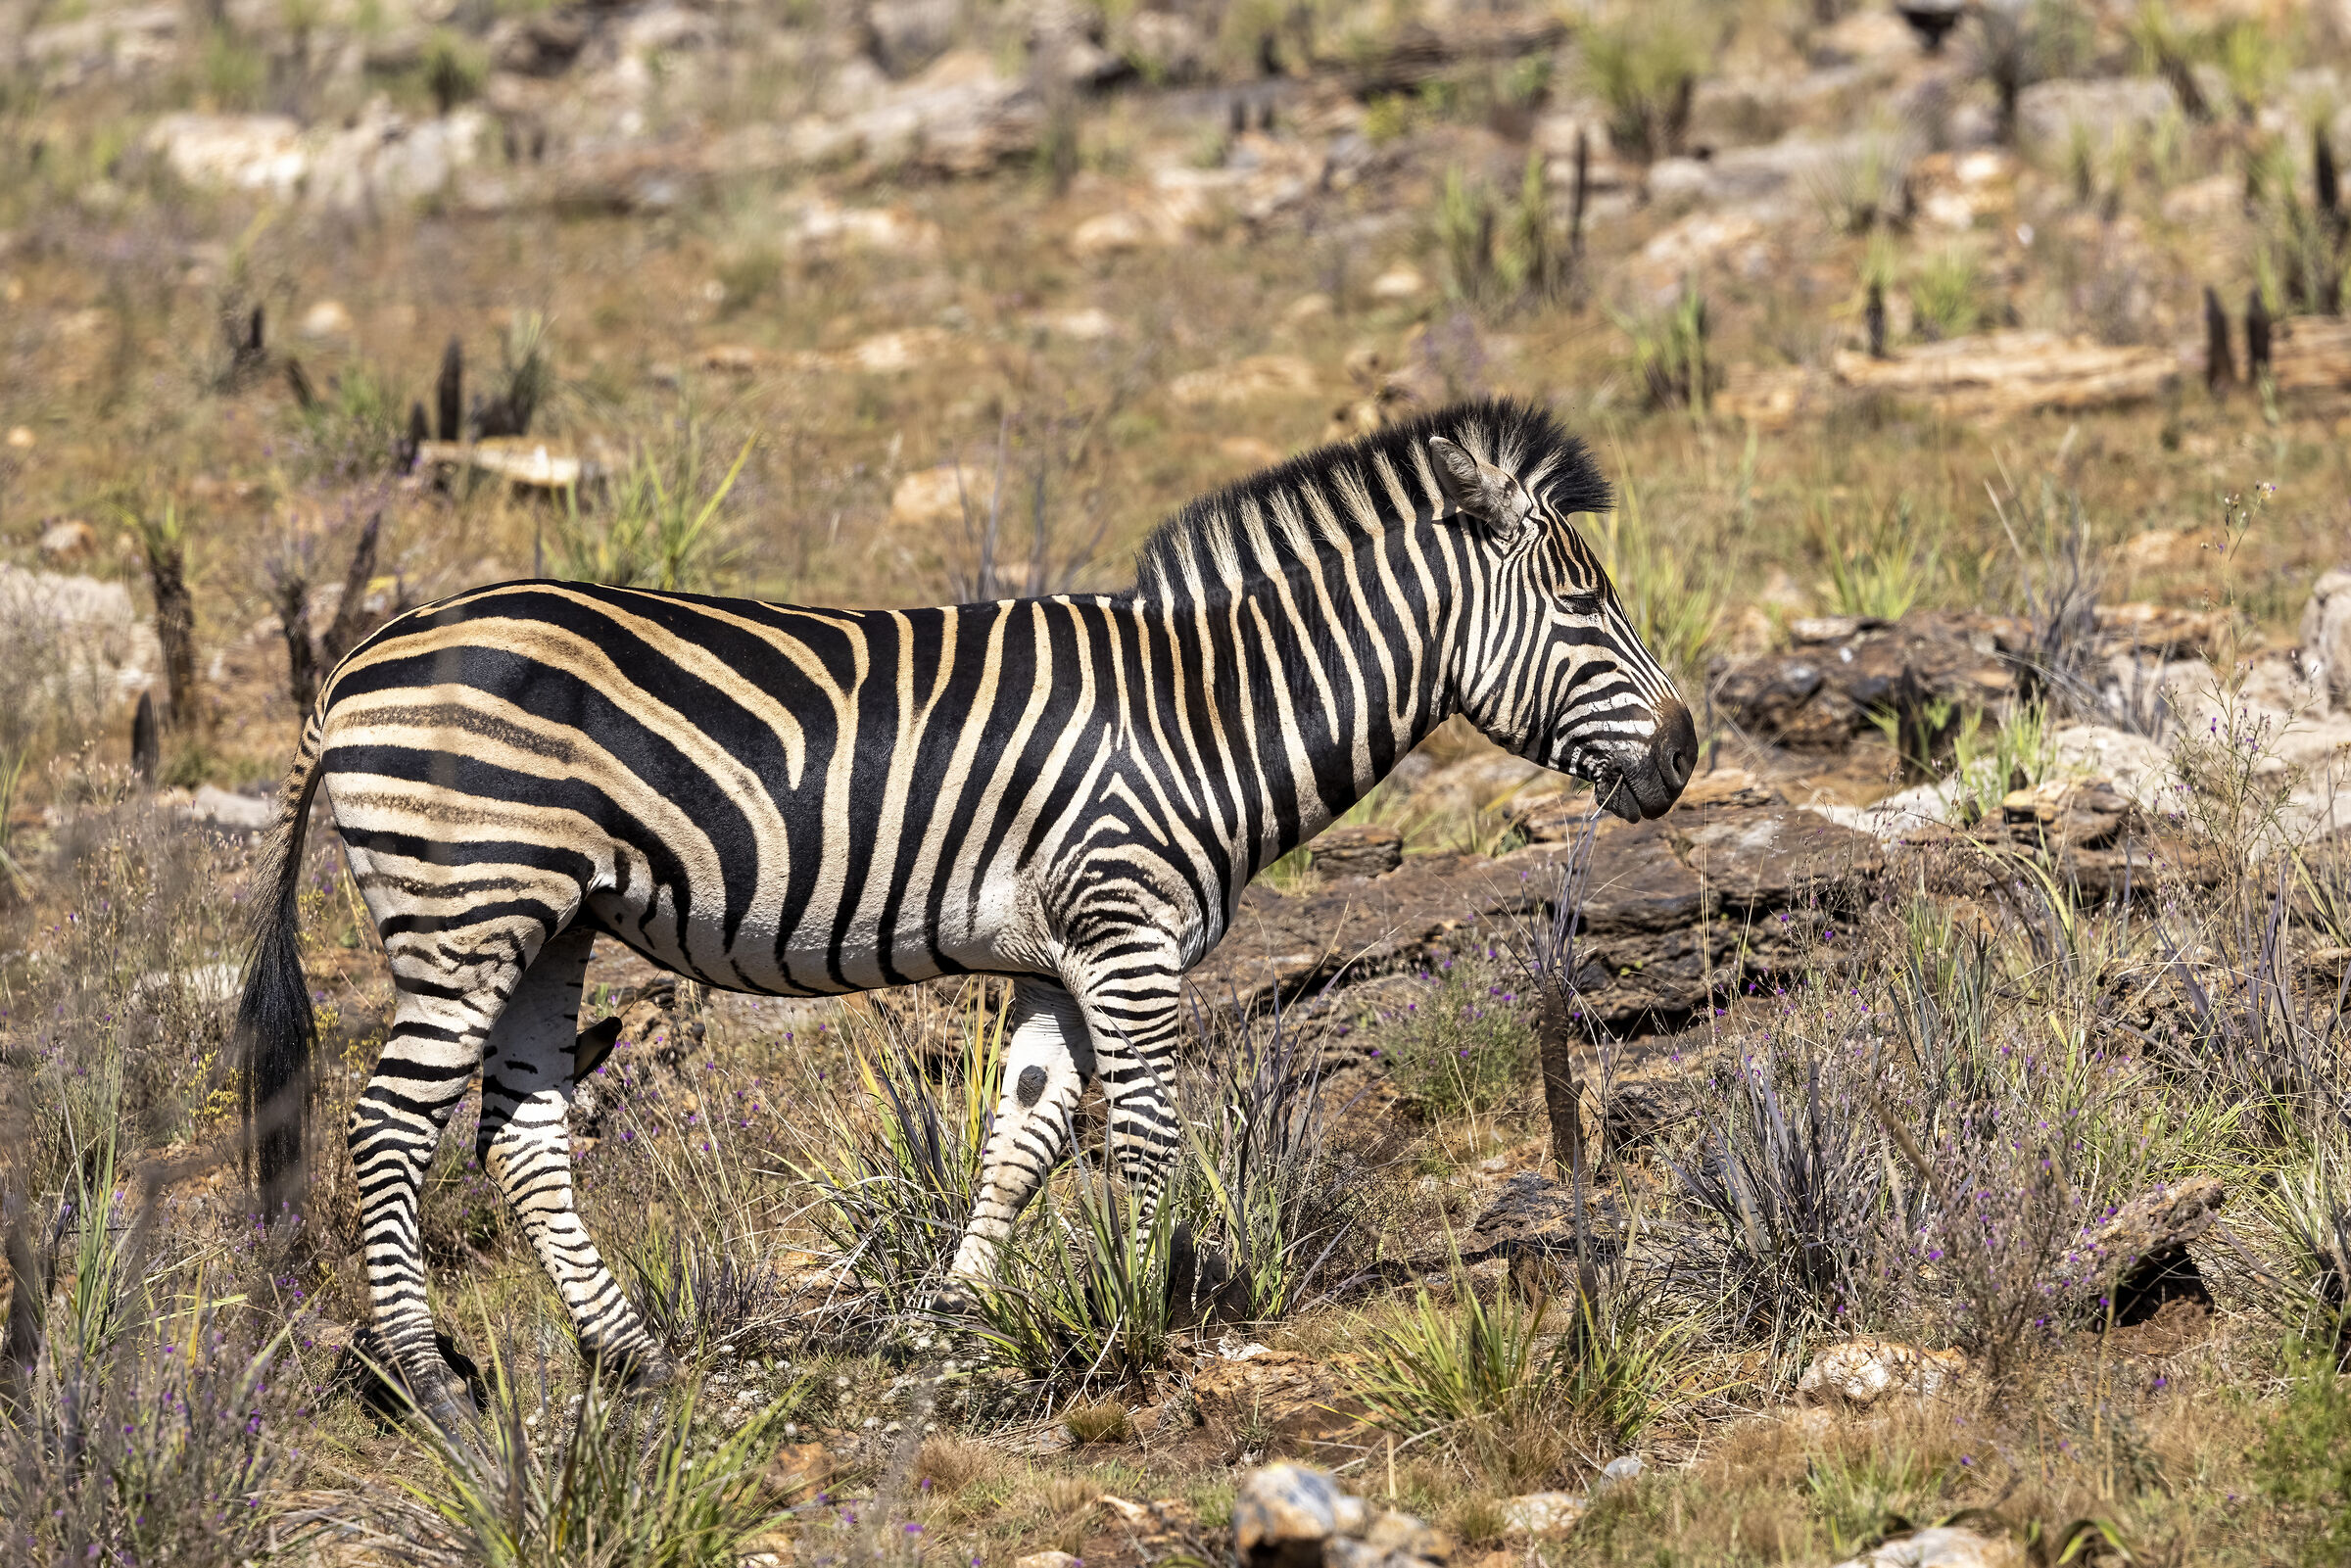 Zebra in profile...